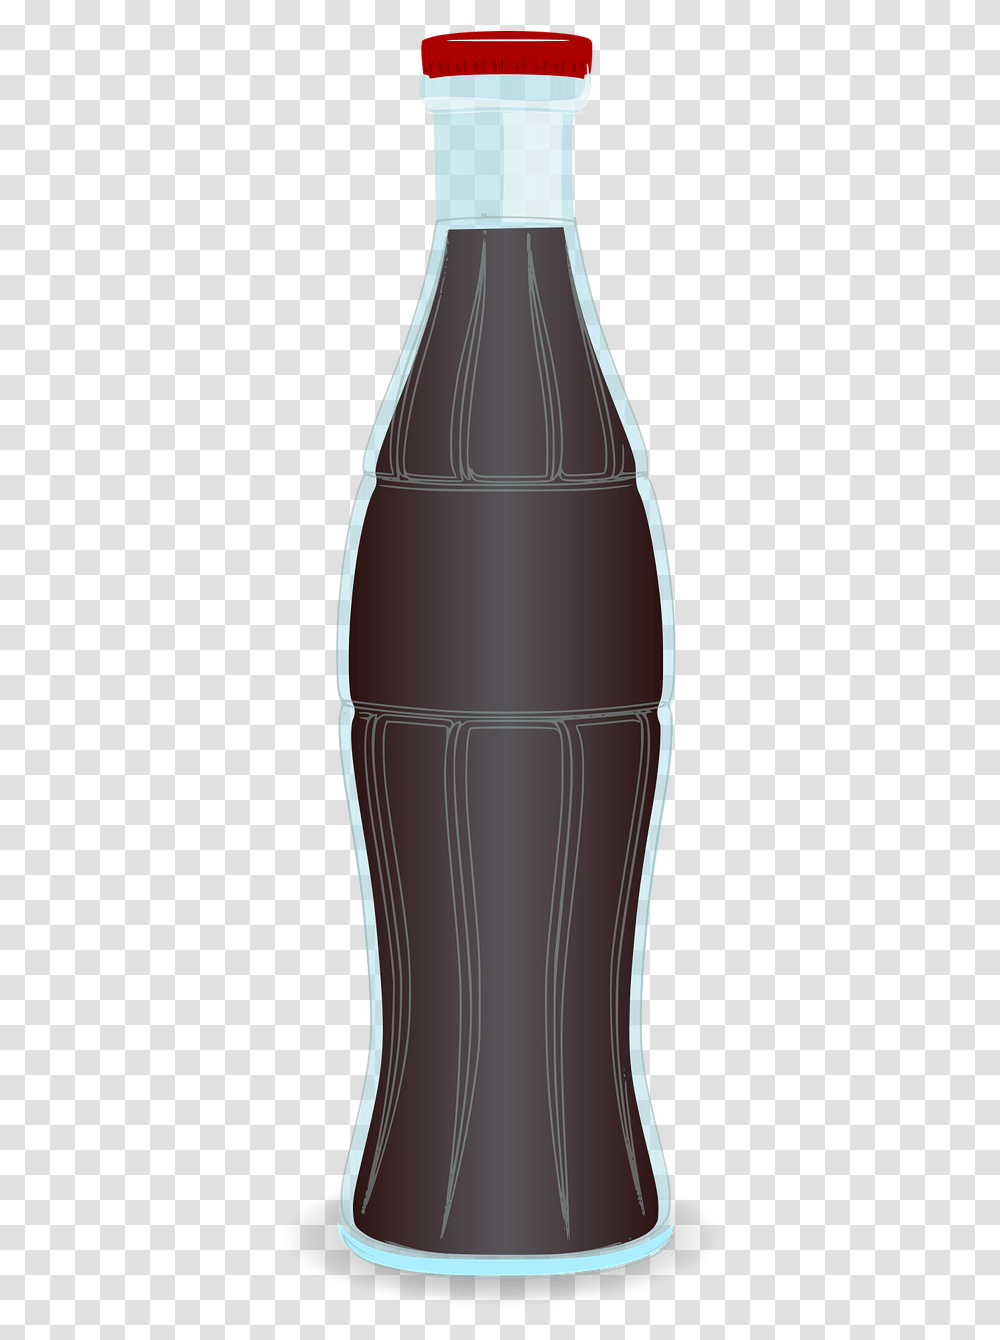 Glass Bottle, Shaker, Jar, Pop Bottle, Beverage Transparent Png